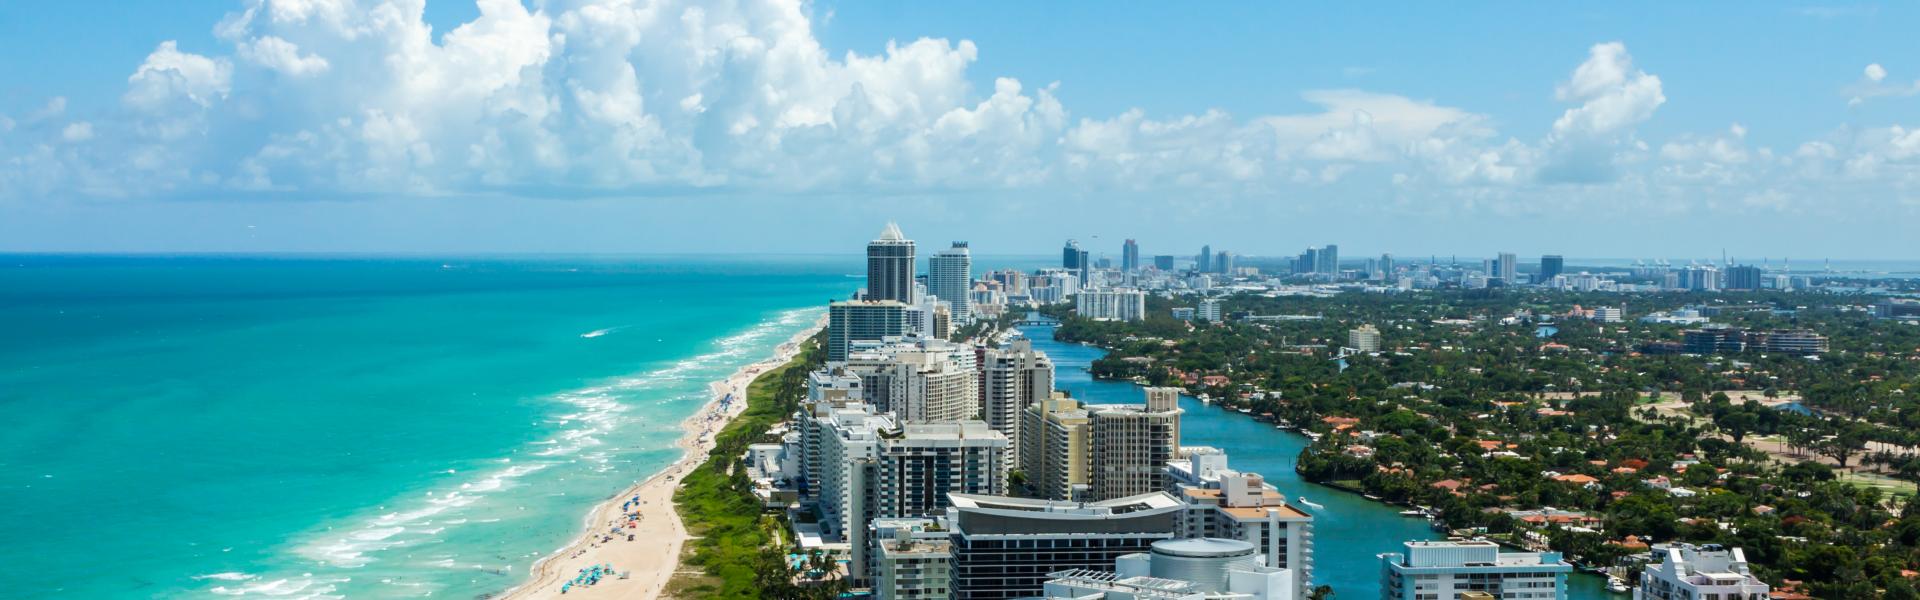 Case vacanze e appartamenti a Miami South Beach in affitto - CaseVacanza.it